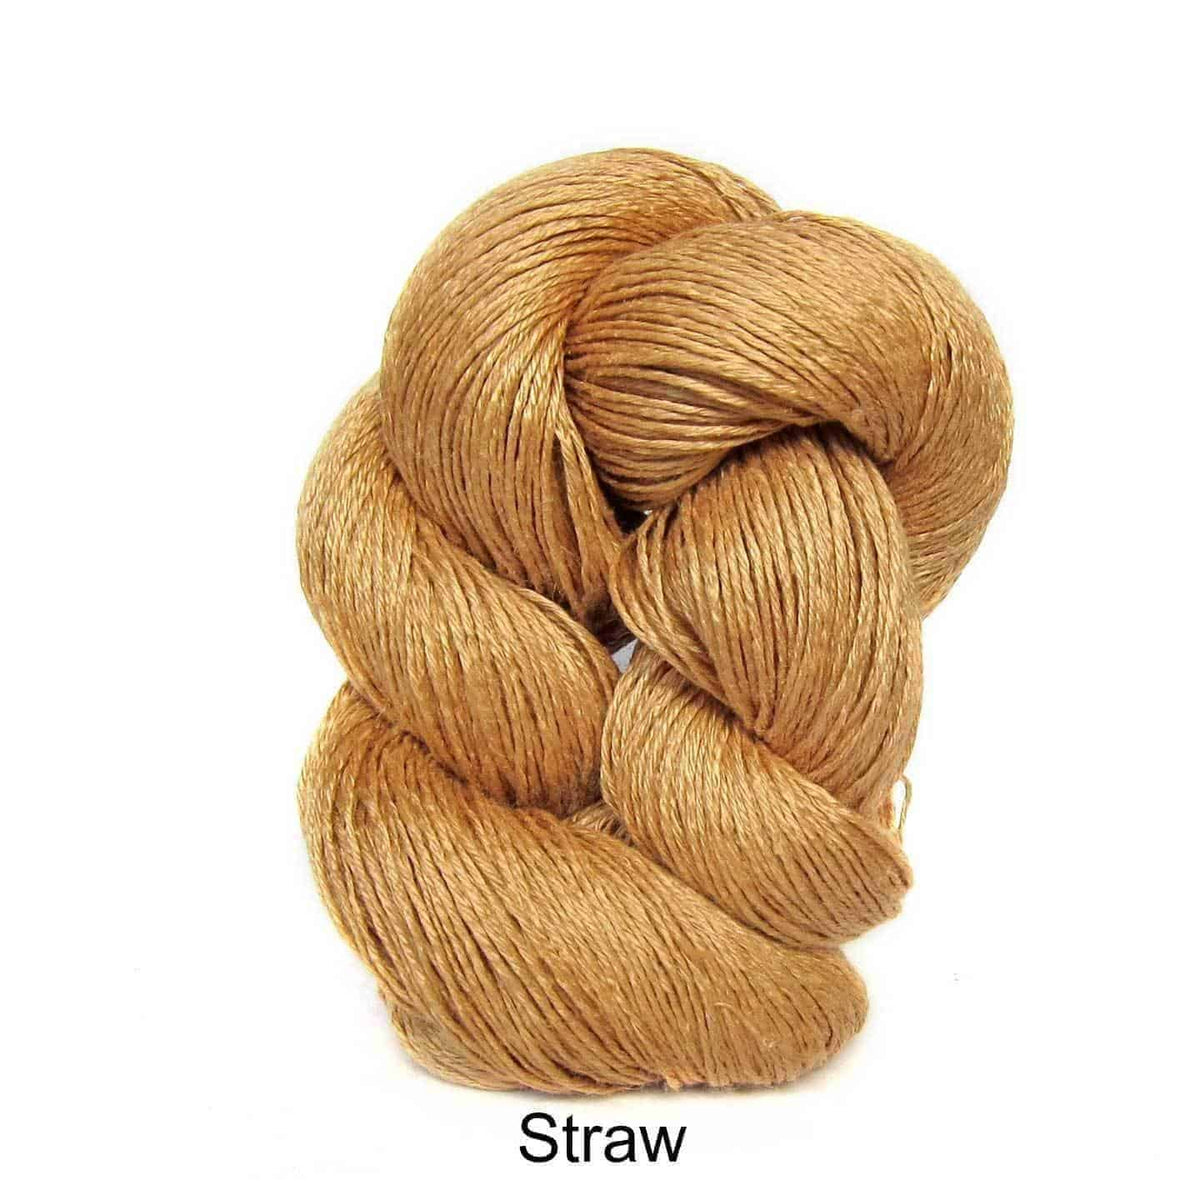 Euroflax Wet Spun Linen Yarn Straw 2694